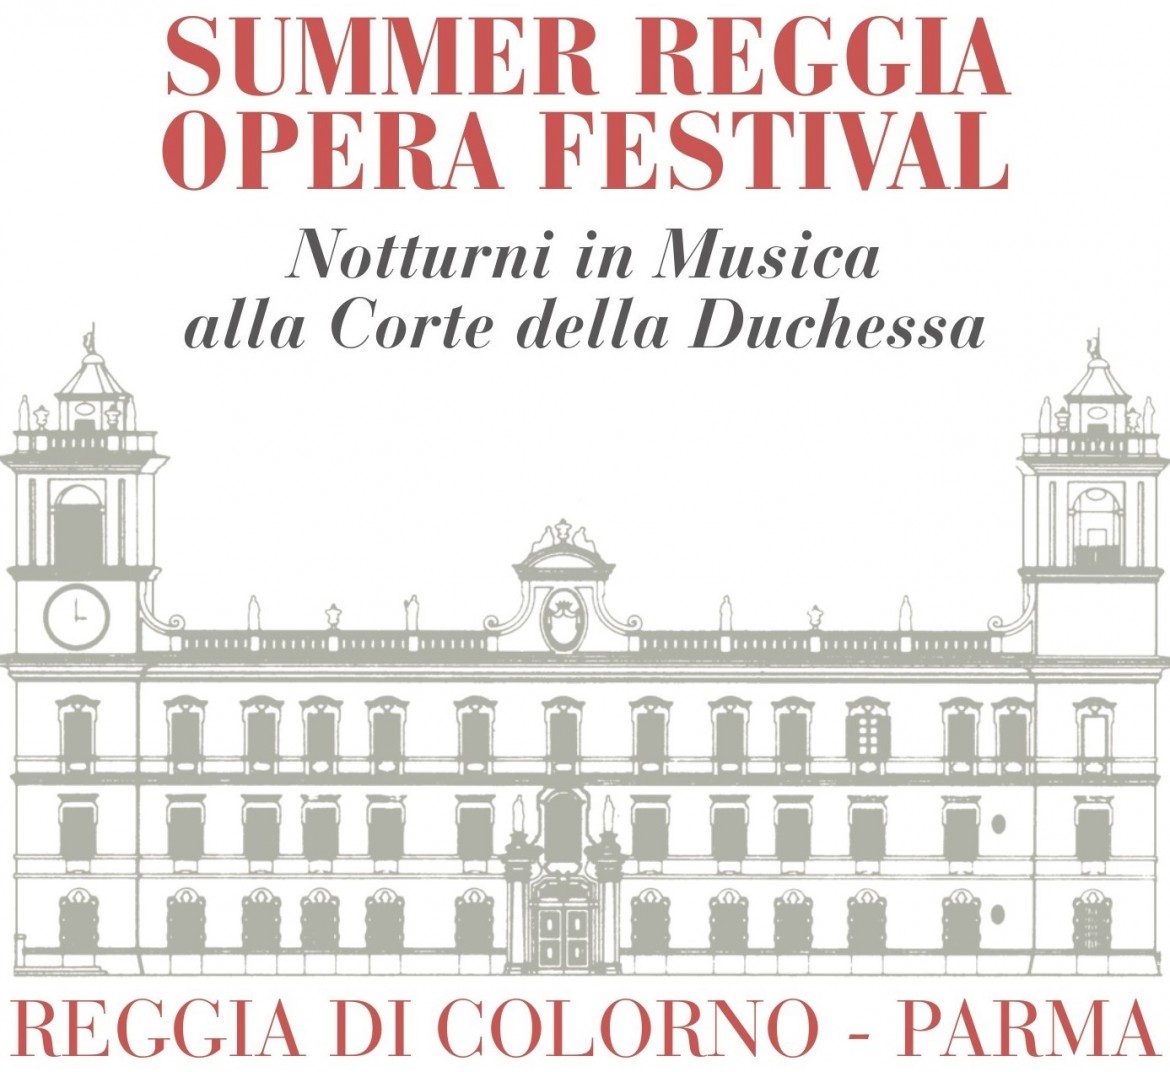  picture of the event: Nello splendore del giardino storico della Reggia di Colorno si terrà l’ Undicesima edizione del “Summer Reggia Opera Festival”.